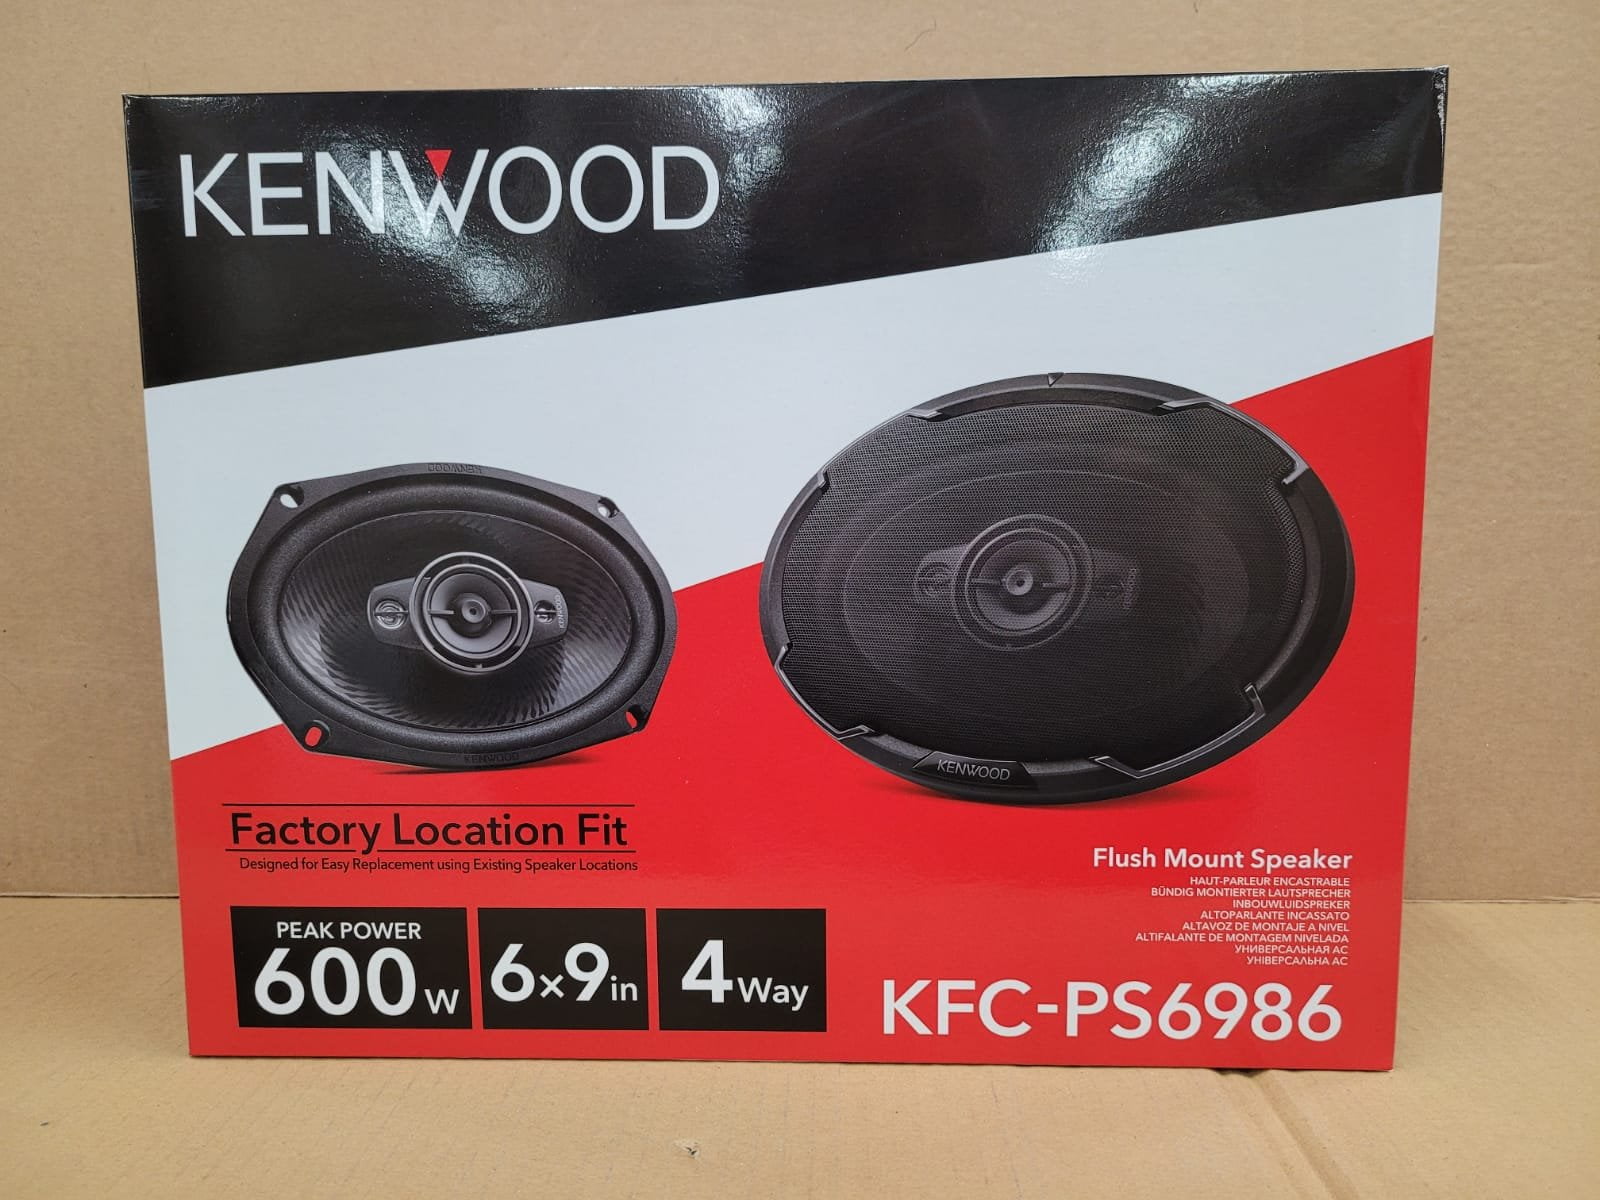 Kenwood KFC-PS6986 Altavoces para Coche 4 Vías 600W